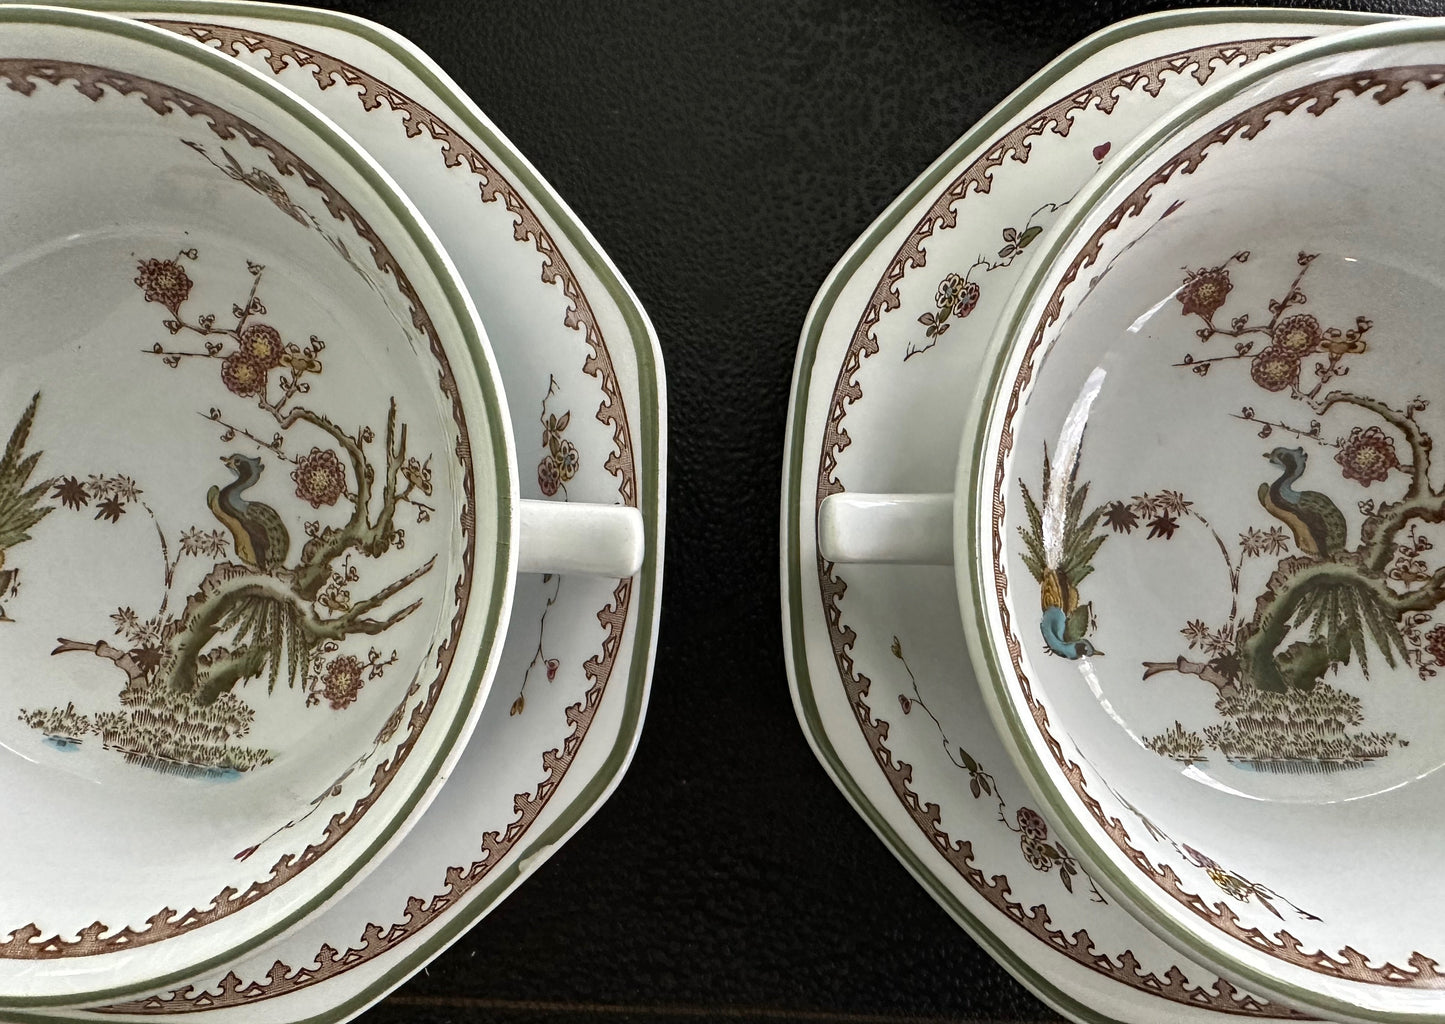 Classic Wedgwood Old Chelsea Georgian Soup Bowls I Vintage Dinnerware - DharBazaar